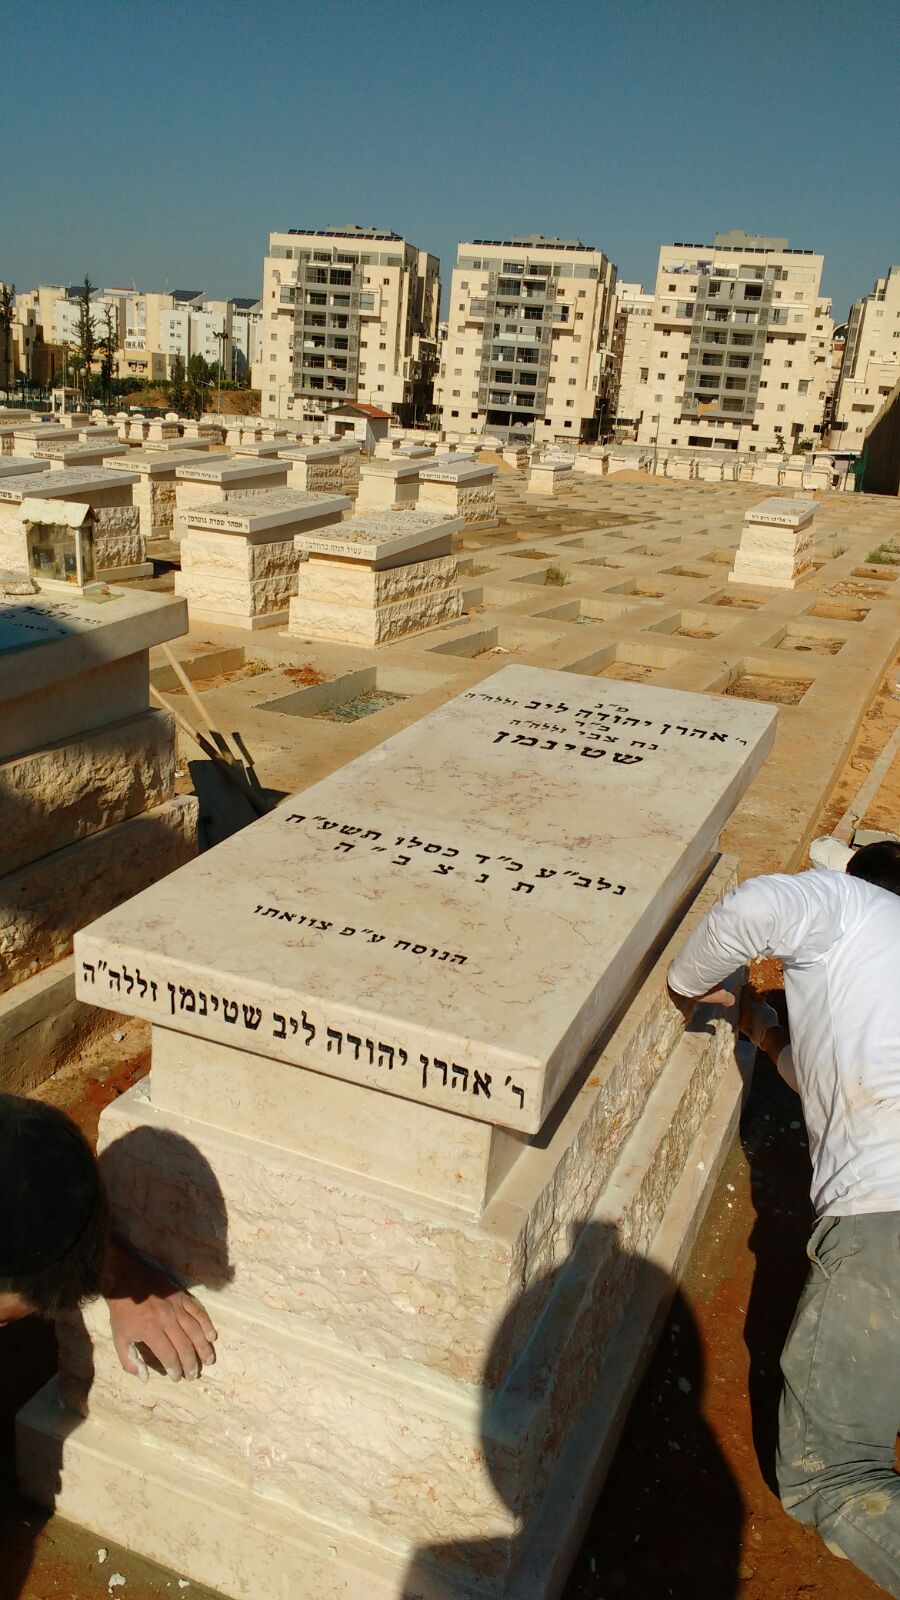 תיעוד ראשון: המצבה בקברו של מרן הרב שטיינמן זצ"ל